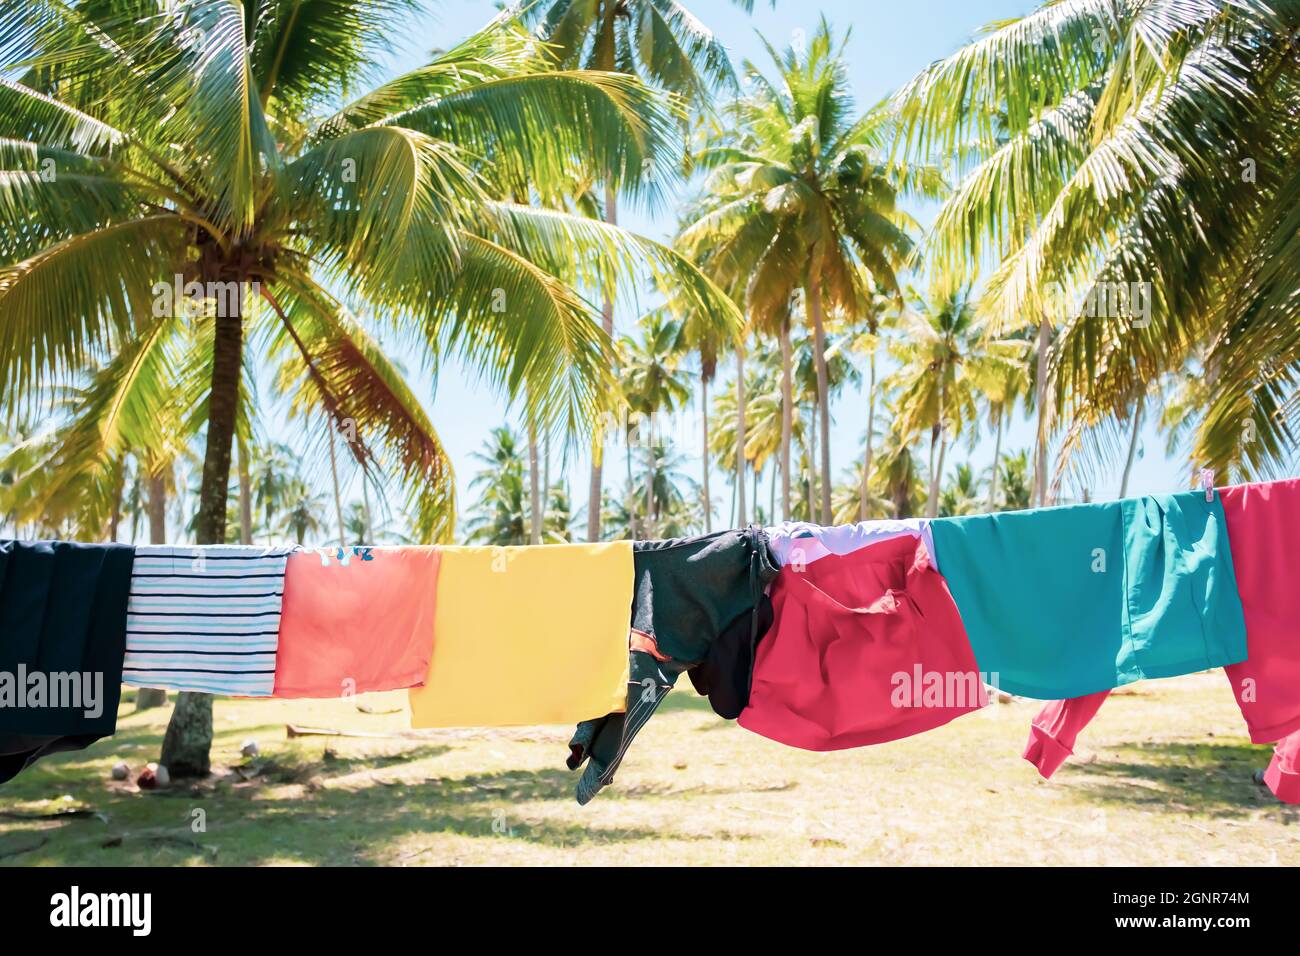 Abiti per bambini appesi sulla linea di vestiario in un giardino di cocco al mare durante l’estate soleggiata. Foto Stock